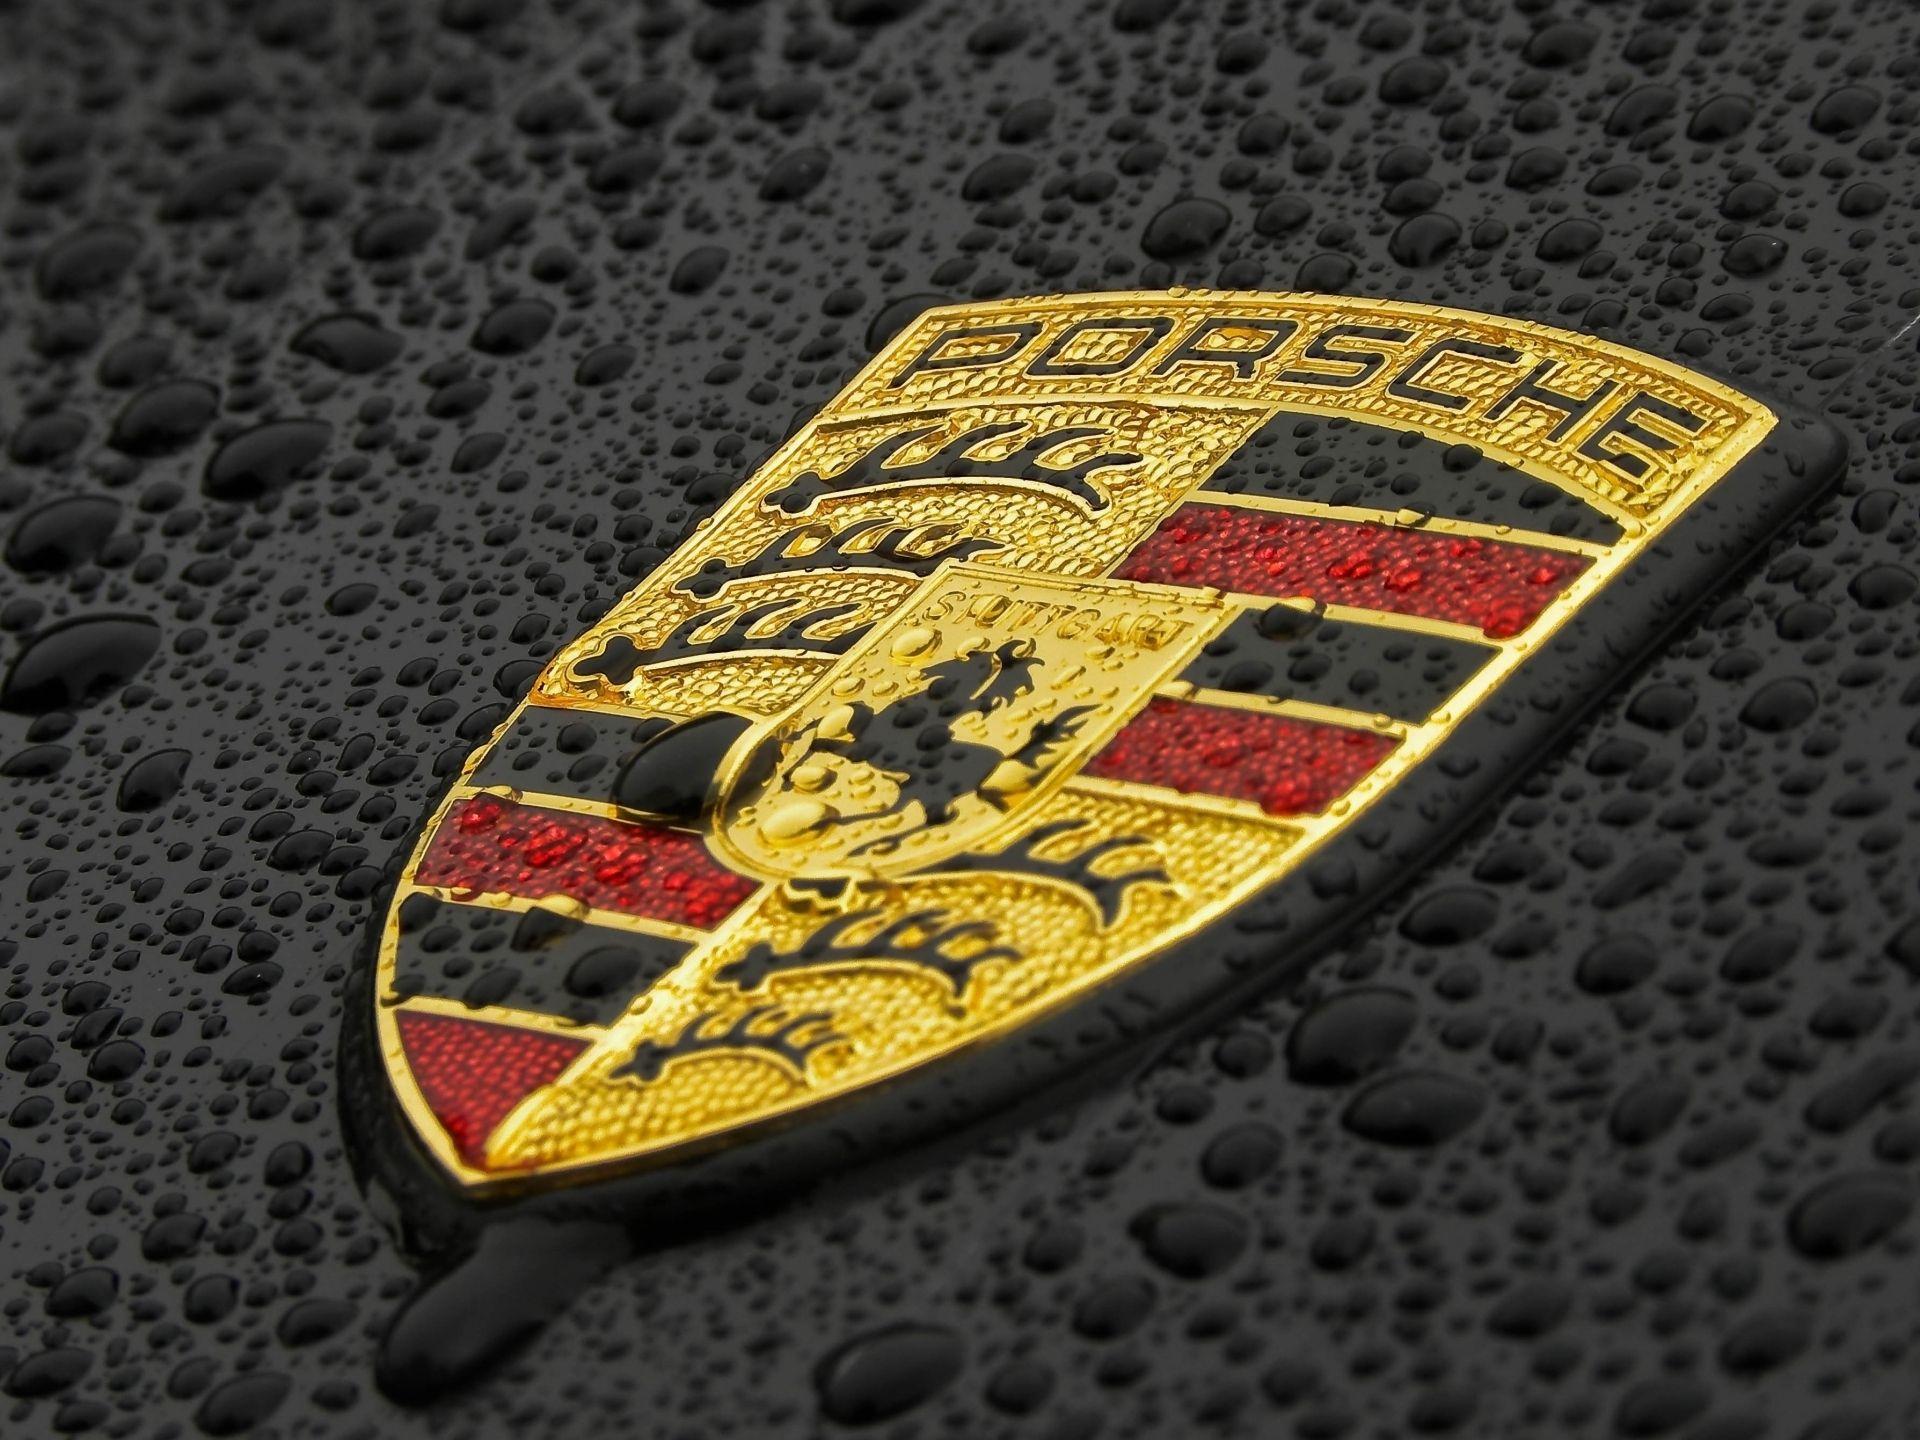 4K Ultra HD Porsche Shield Wallpapers - Top Free 4K Ultra HD Porsche